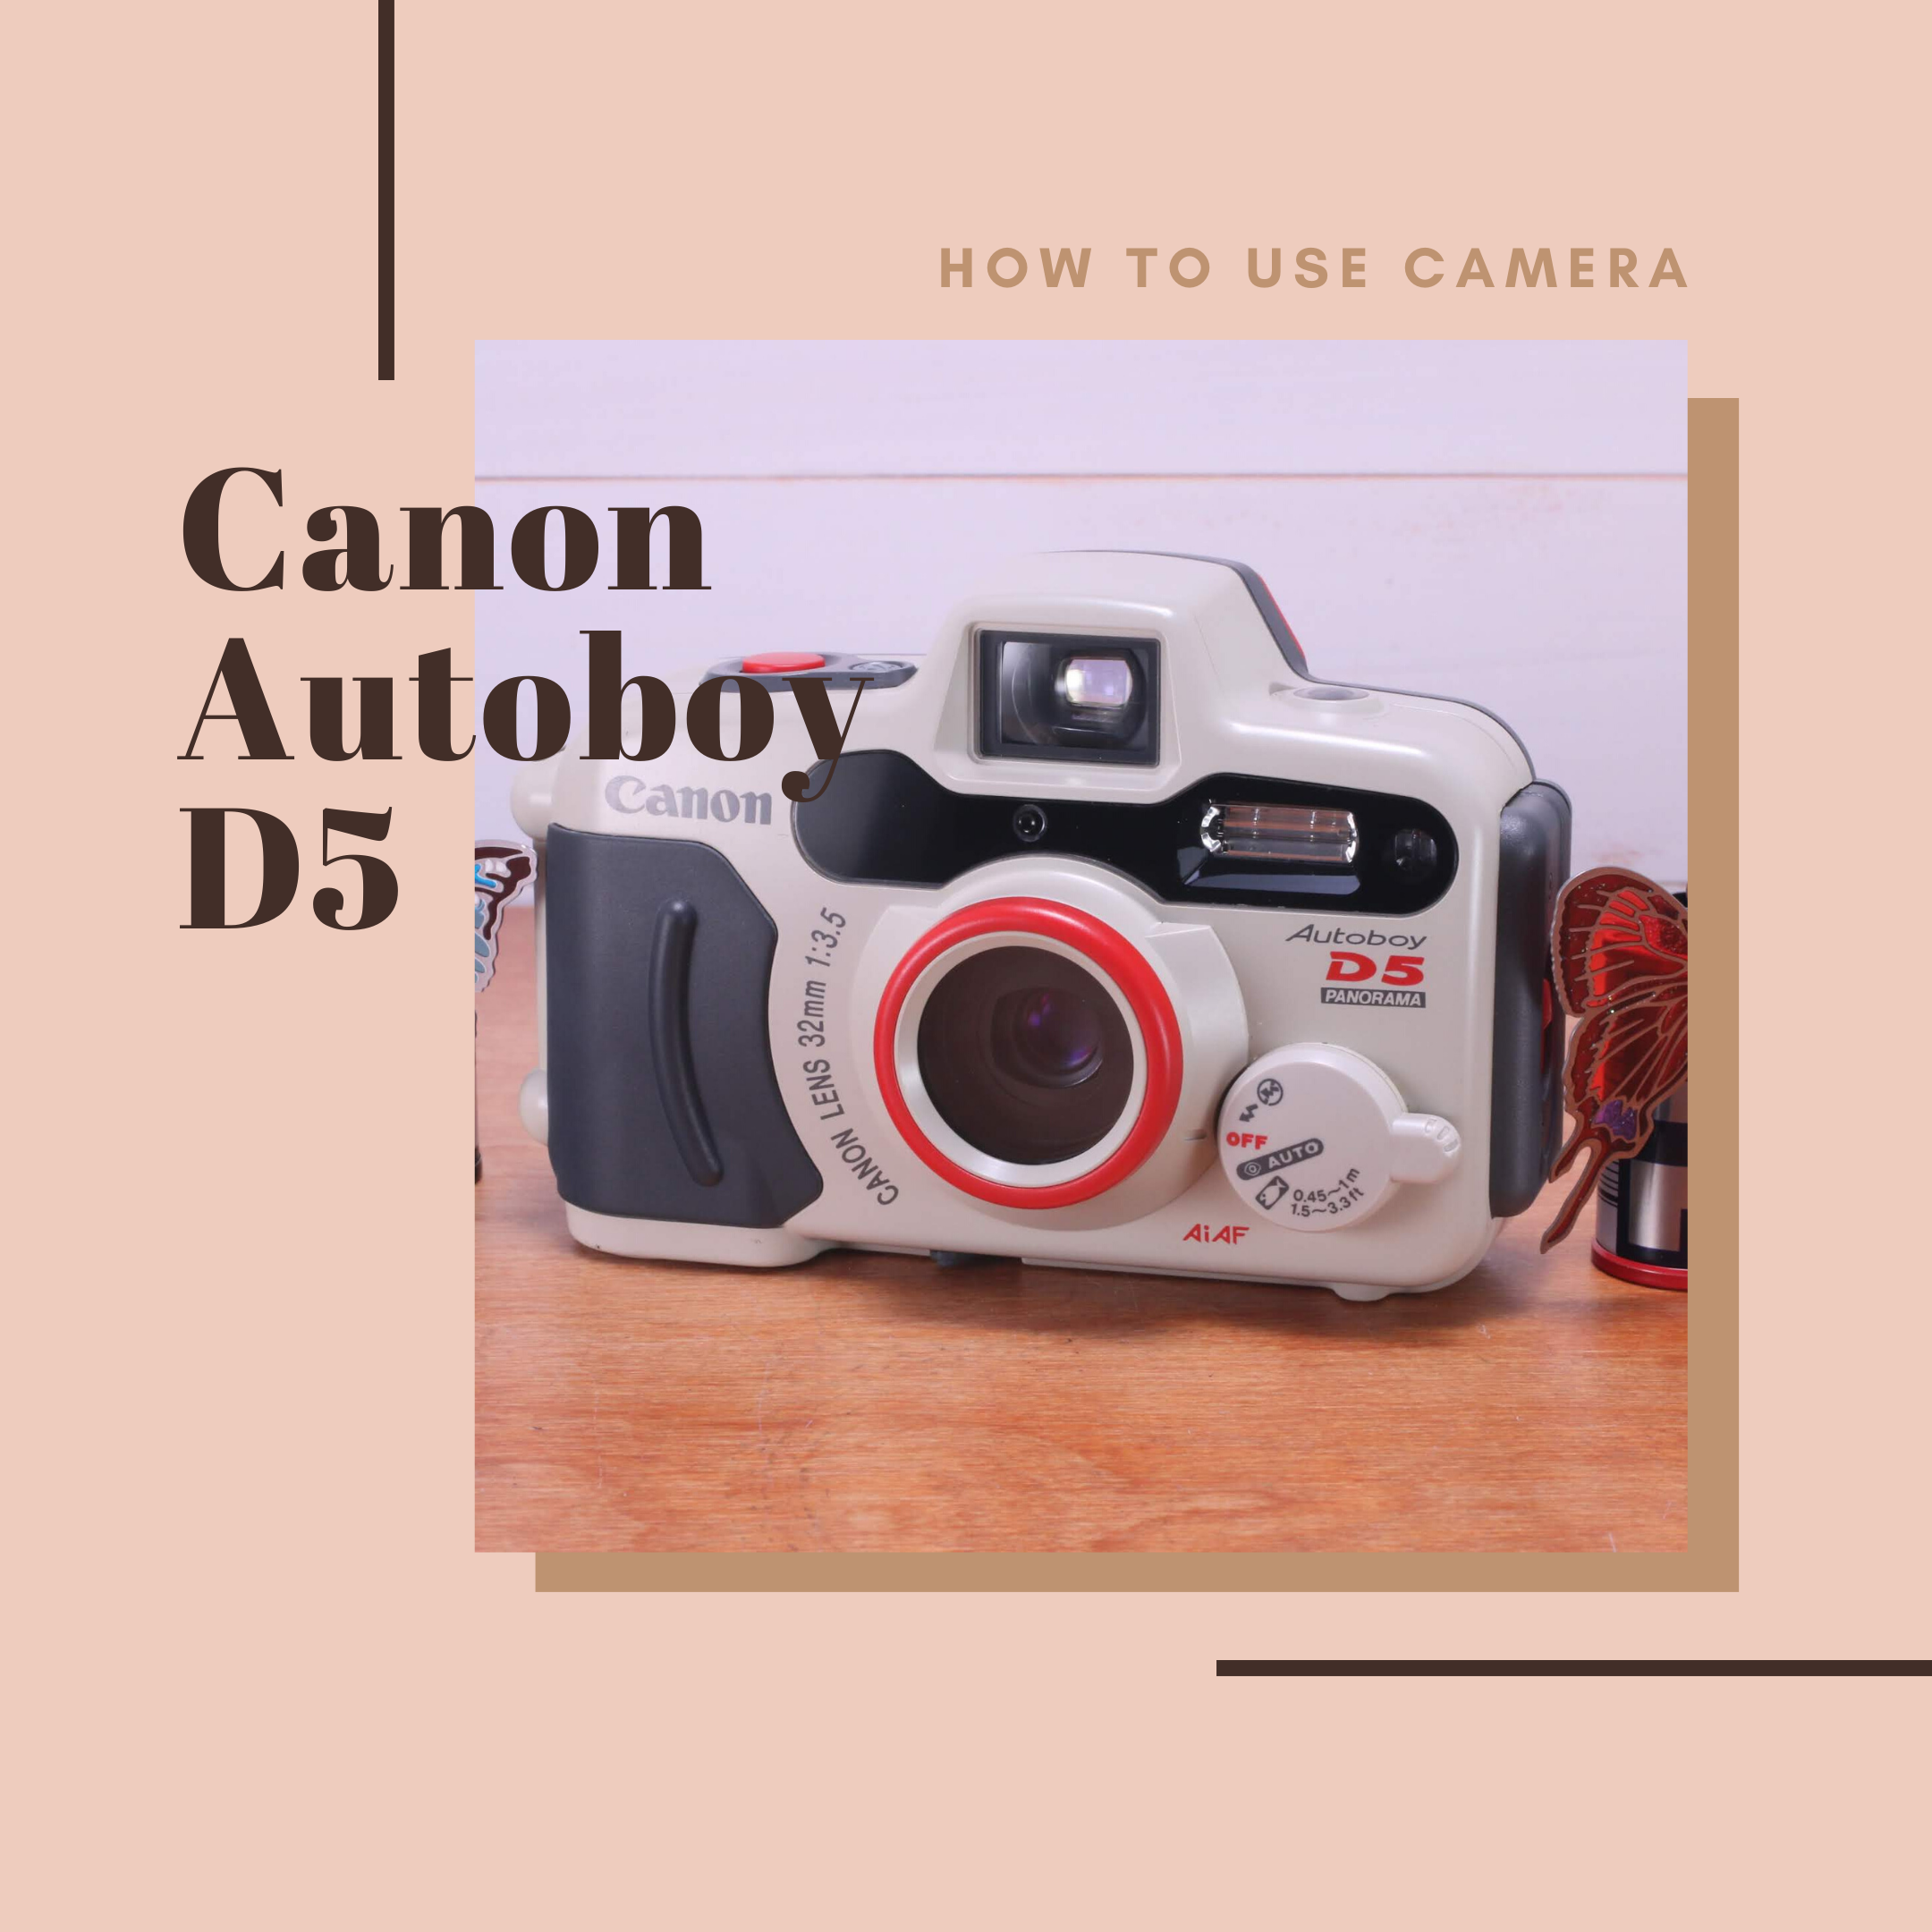 カメラ フィルムカメラ Canon Autoboy D5 の使い方 | Totte Me Camera